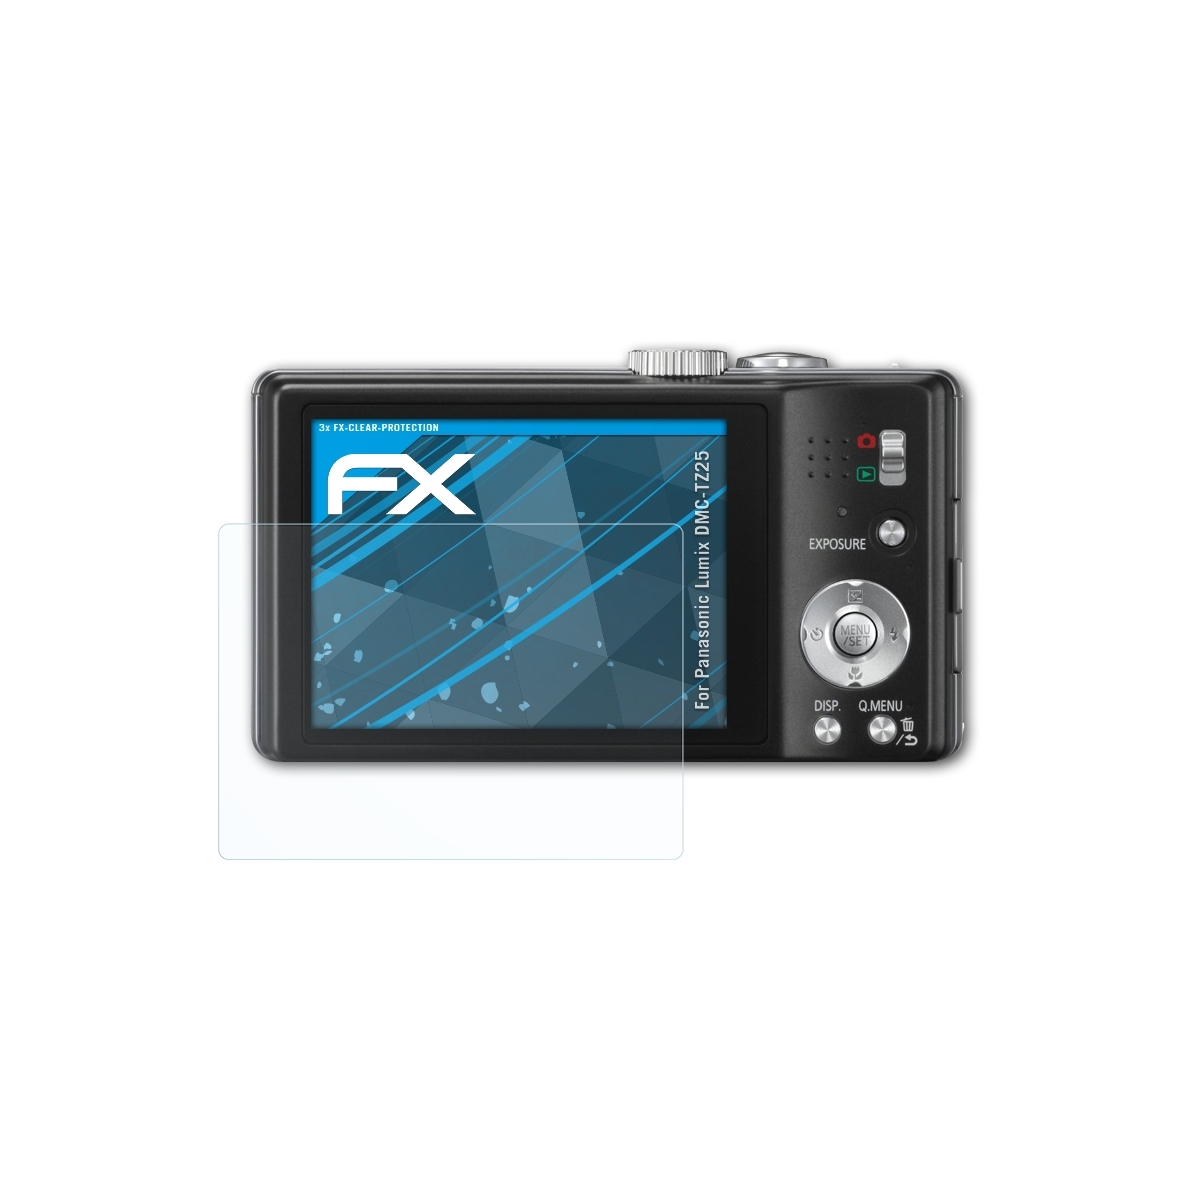 DMC-TZ25) Panasonic FX-Clear Lumix 3x ATFOLIX Displayschutz(für